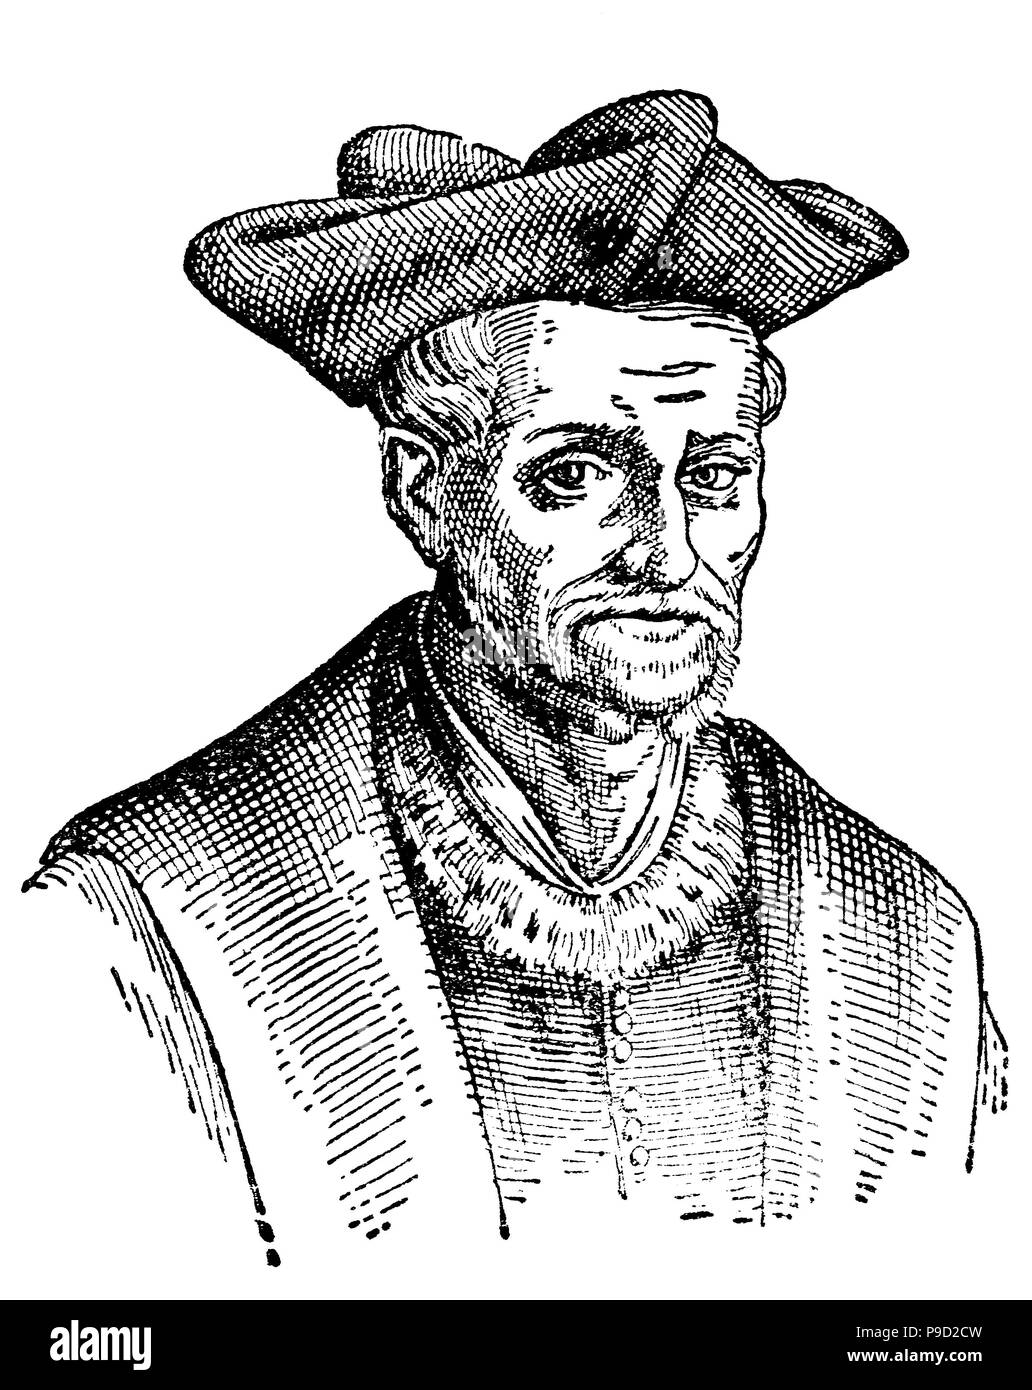 Francois Rabelais ; entre 1483 et 1494 â€" 9 avril 1553 était un écrivain de la Renaissance française, médecin, humaniste de la Renaissance, moine et érudit grec numérique, l'amélioration de la reproduction de l'original d'imprimer à partir de l'année 1900 Banque D'Images